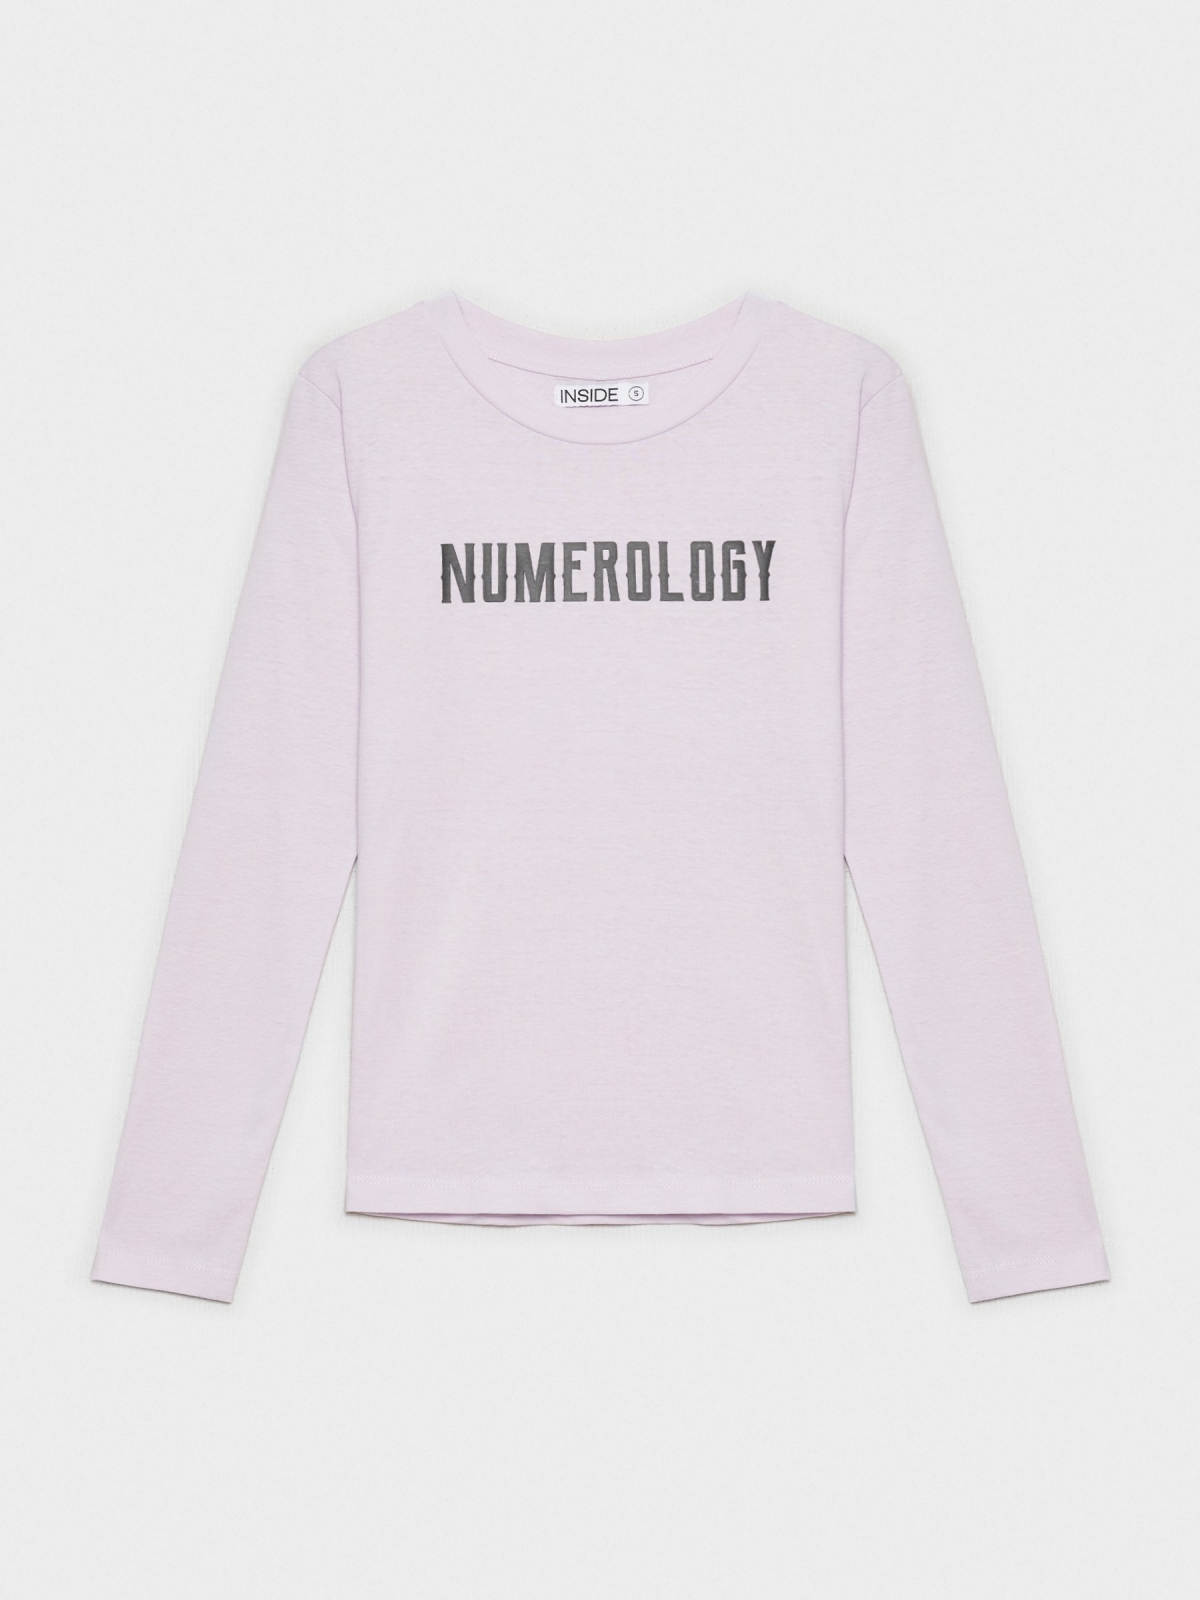  T-shirt preta de numerologia lilás